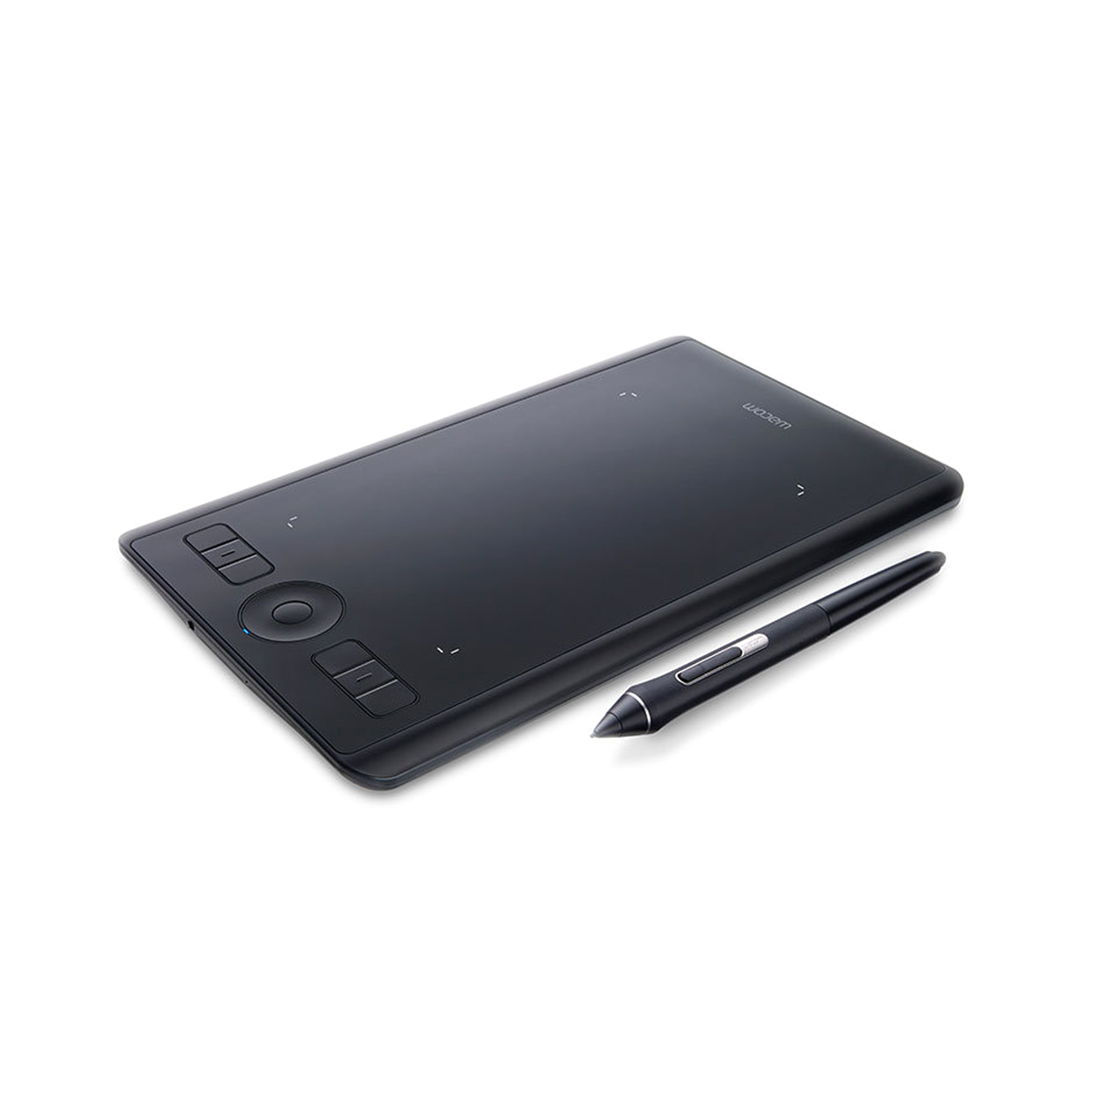 Графический планшет, Wacom, Intuos Pro Small EN/RU (PTH-460K0B), Разрешение 5080 lpi, Чувствительность к нажатию 2048, 6 программируемых клавиш, Размер 320,1x207,8x11,5 мм, Чёрный